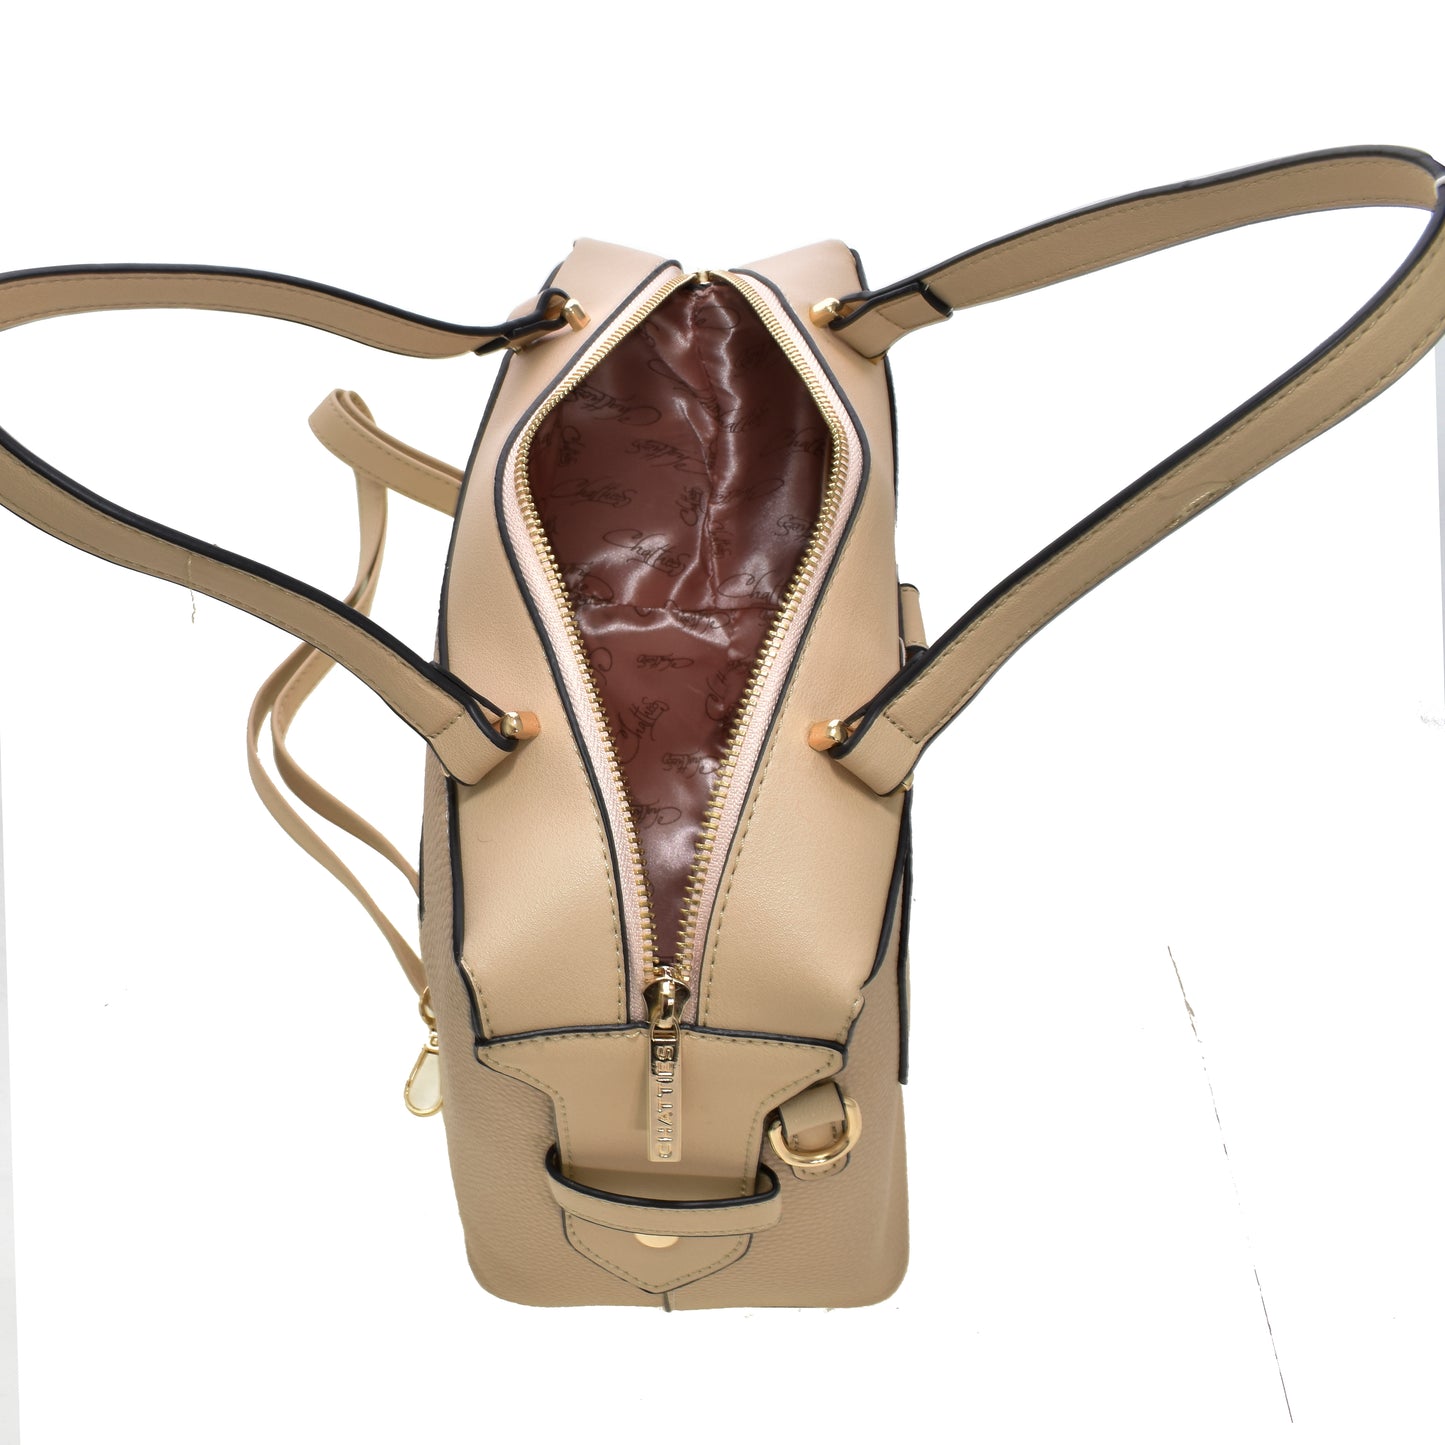 Bolsa [Chatties] tipo Satchel Crossbody con diseño tipo moño color nude